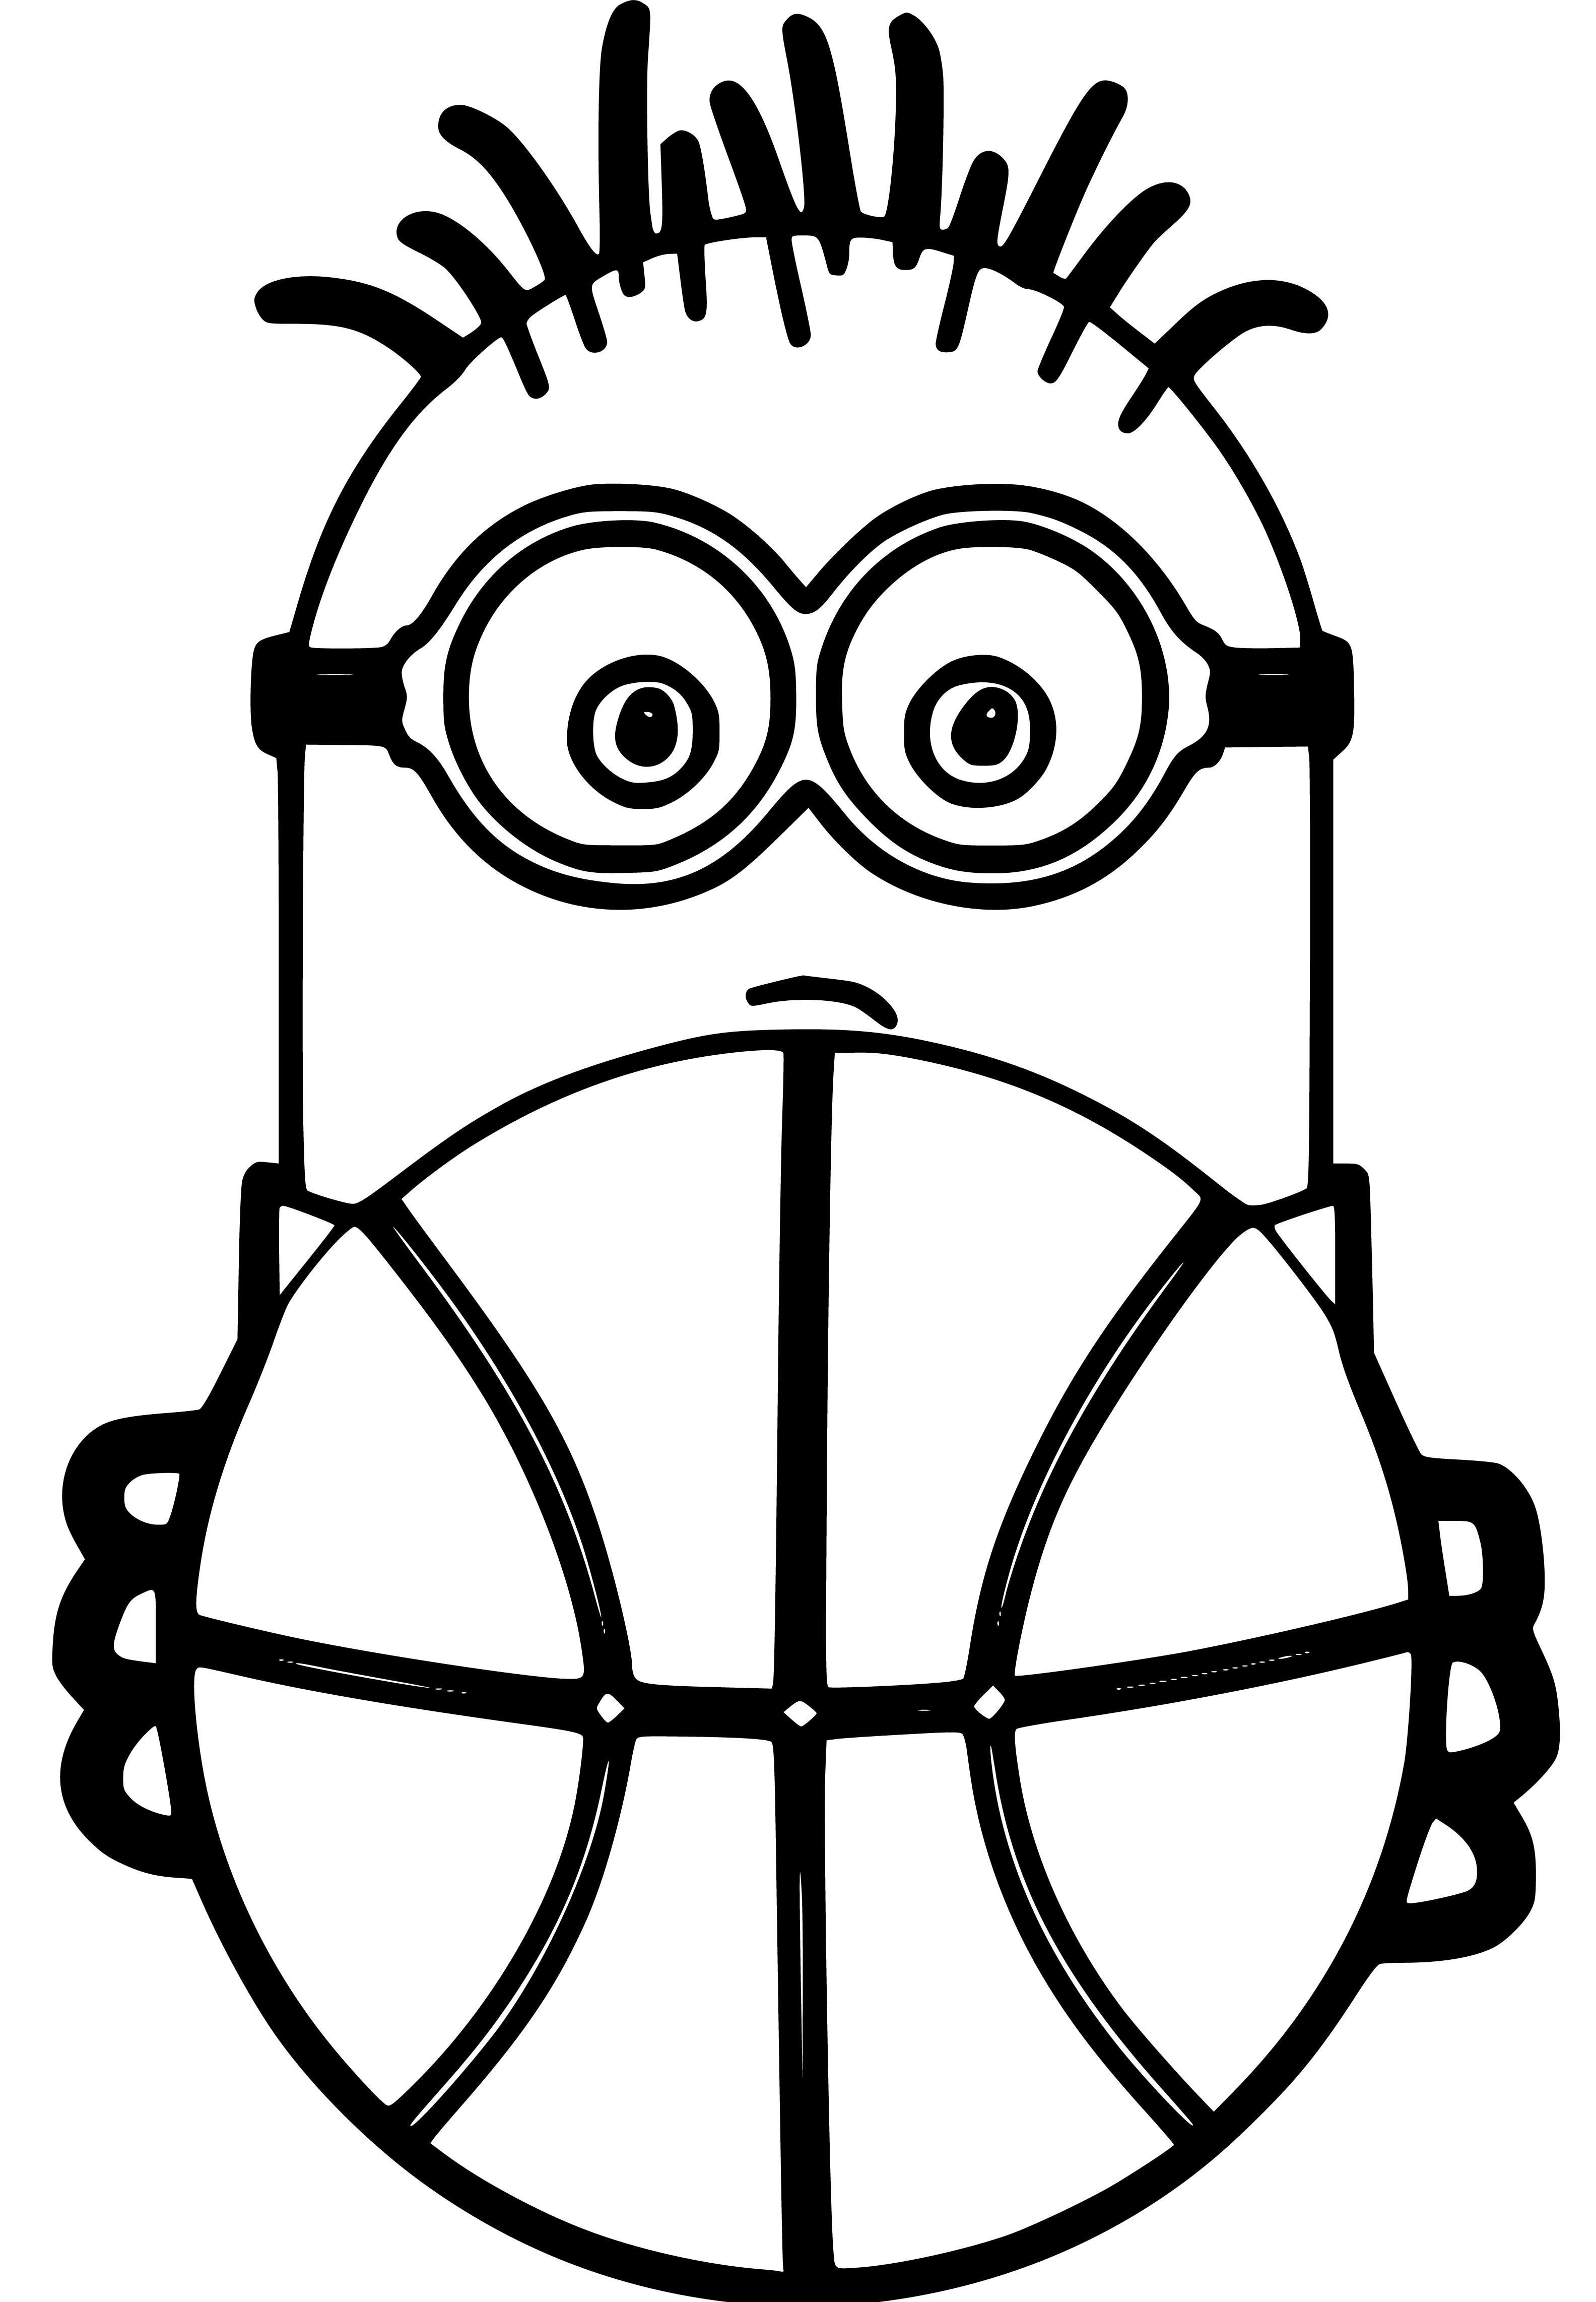 Minion Basketball Coloring Page Printable - SheetalColor.com